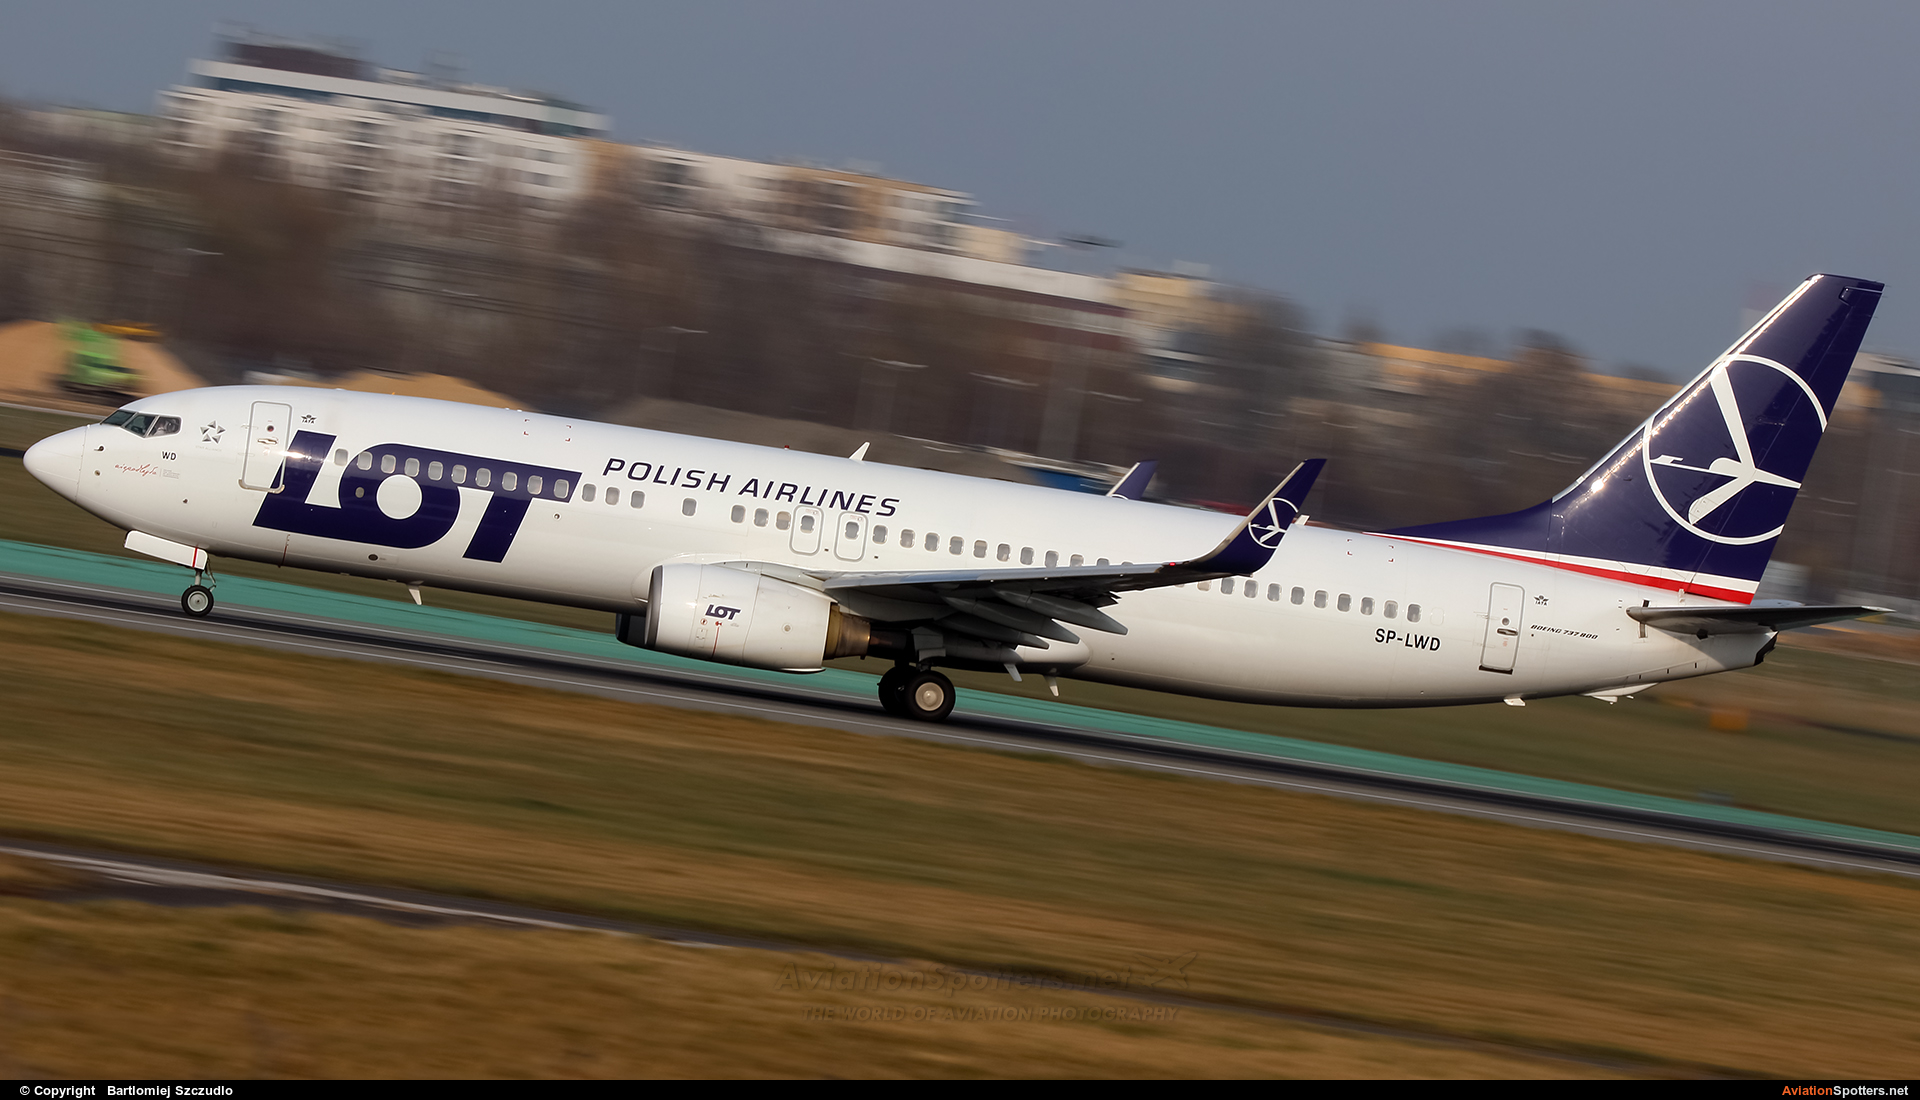 LOT - Polish Airlines  -  737-800  (SP-LWD) By Bartlomiej Szczudlo  (BartekSzczudlo)